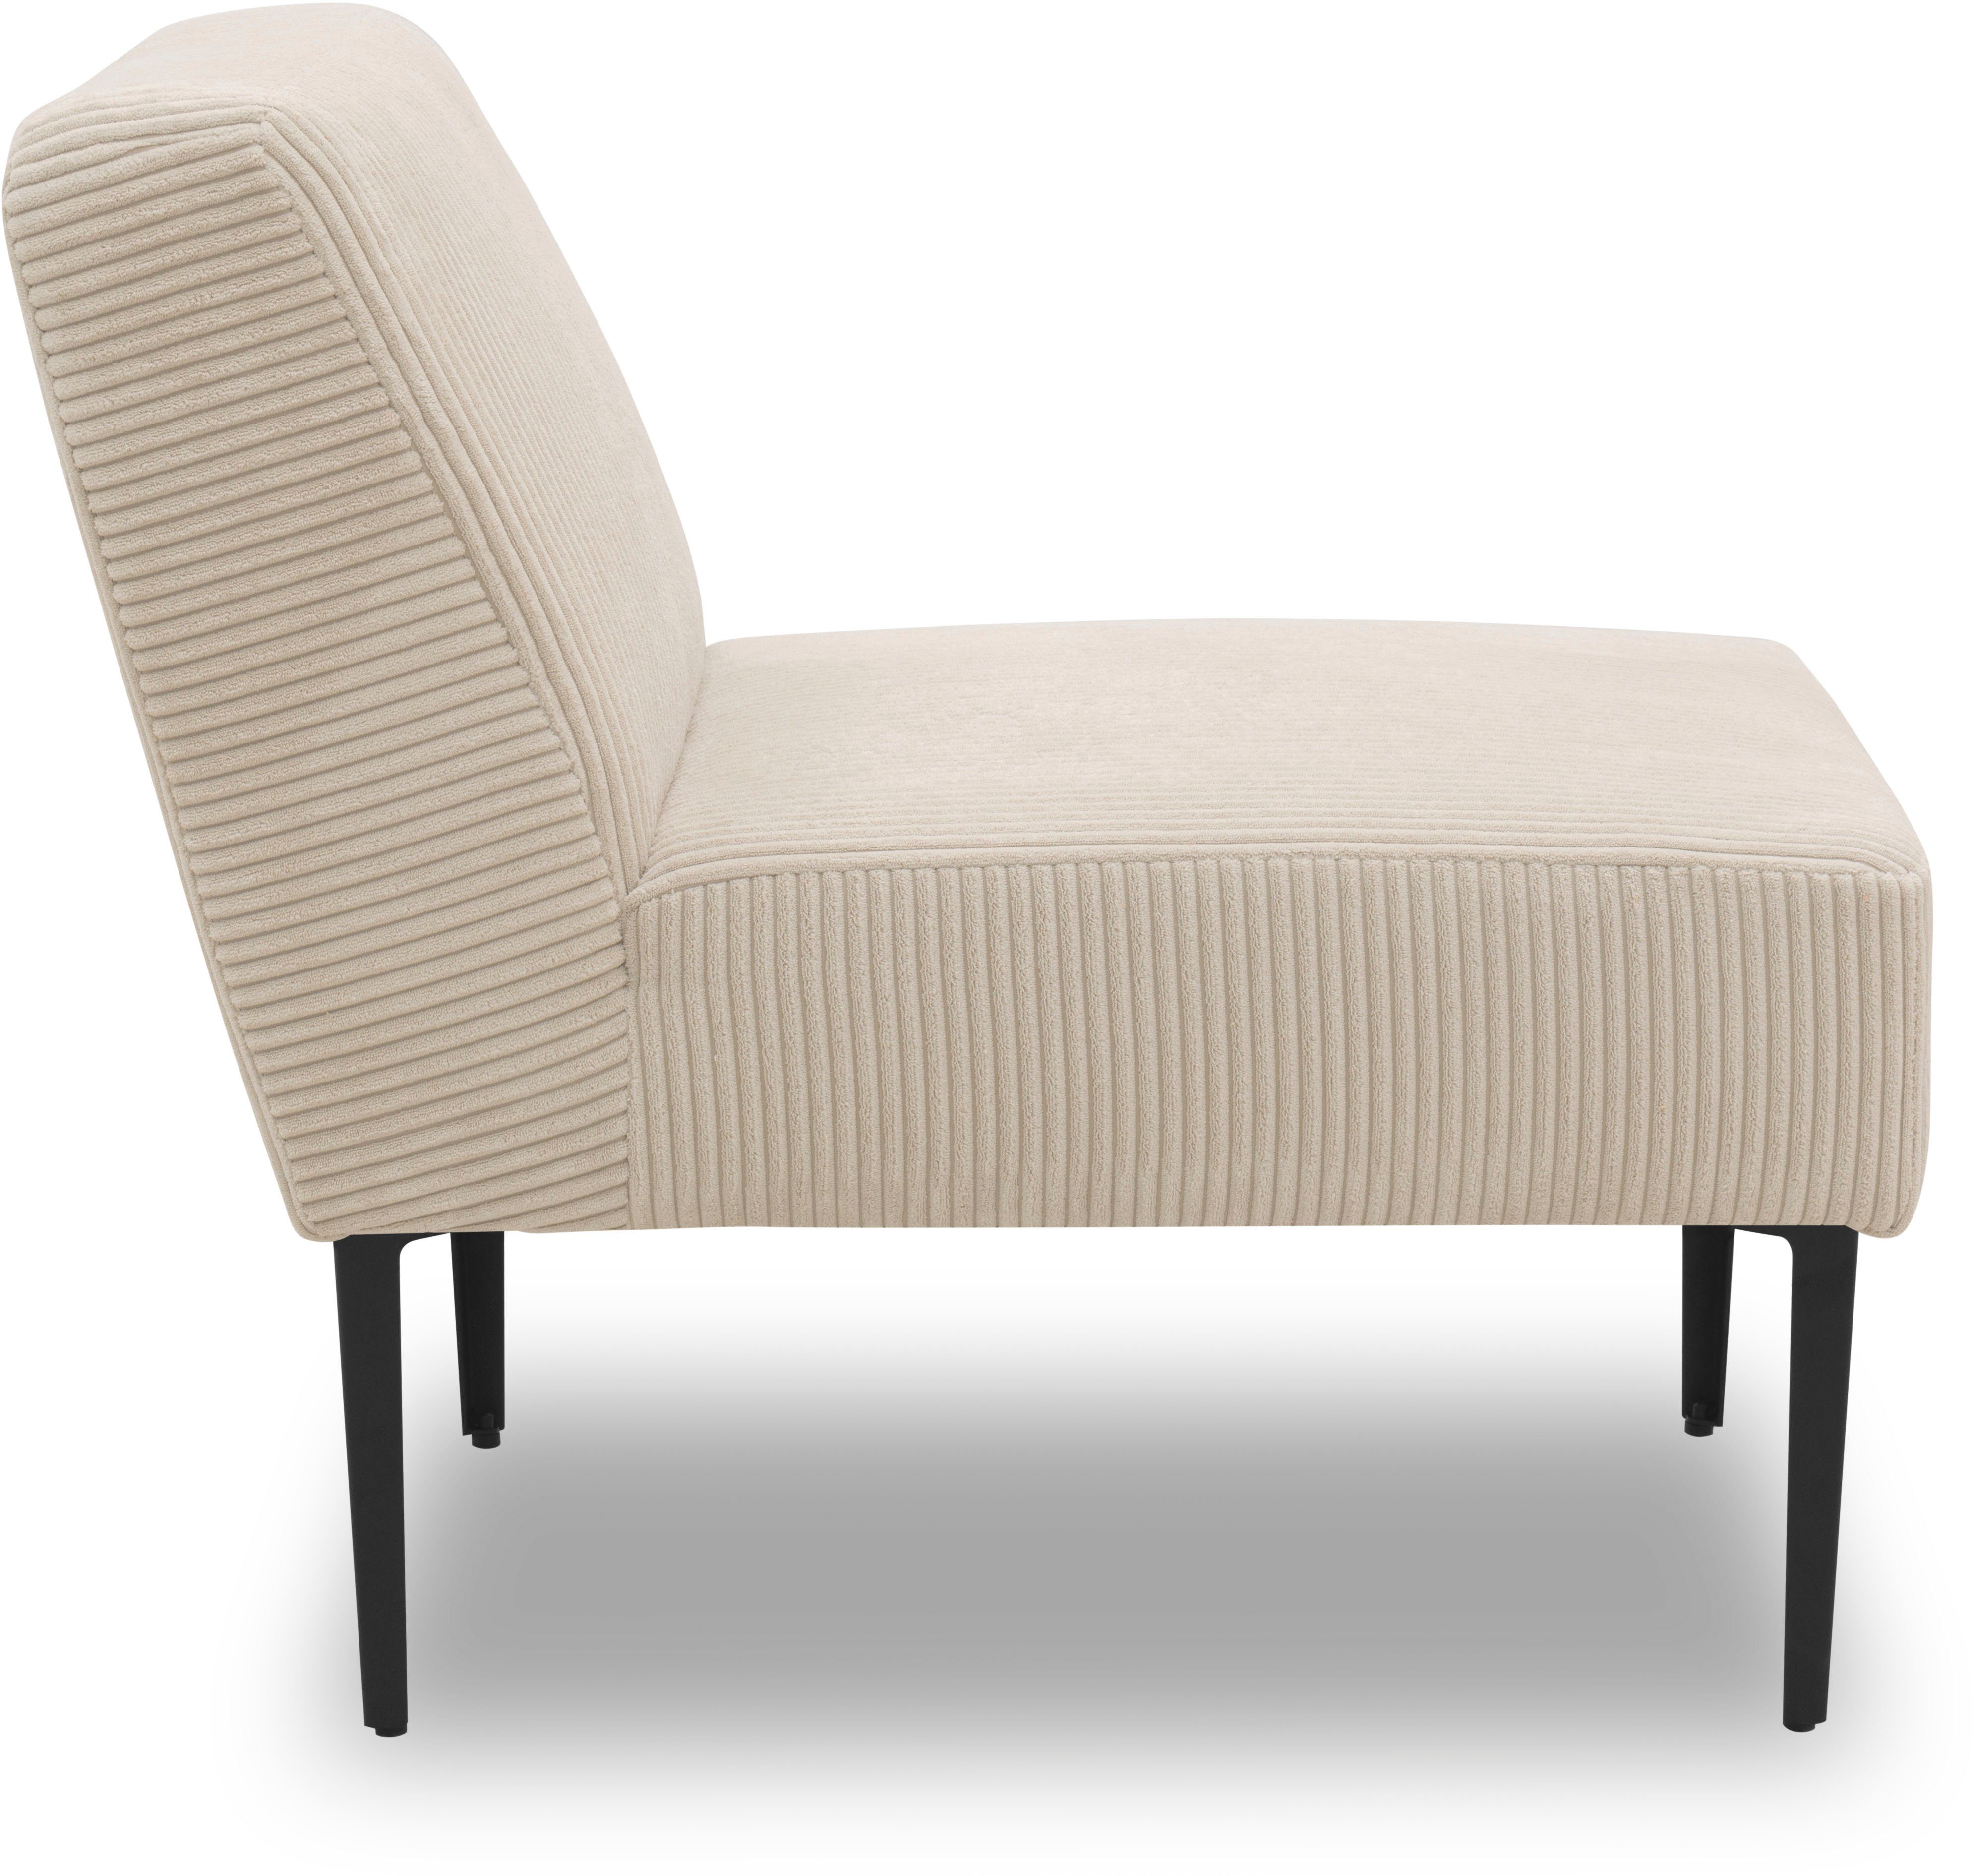 collection für Sessel persönlichen creme Zusammenstellung eines Sofas individuelle 700010, DOMO